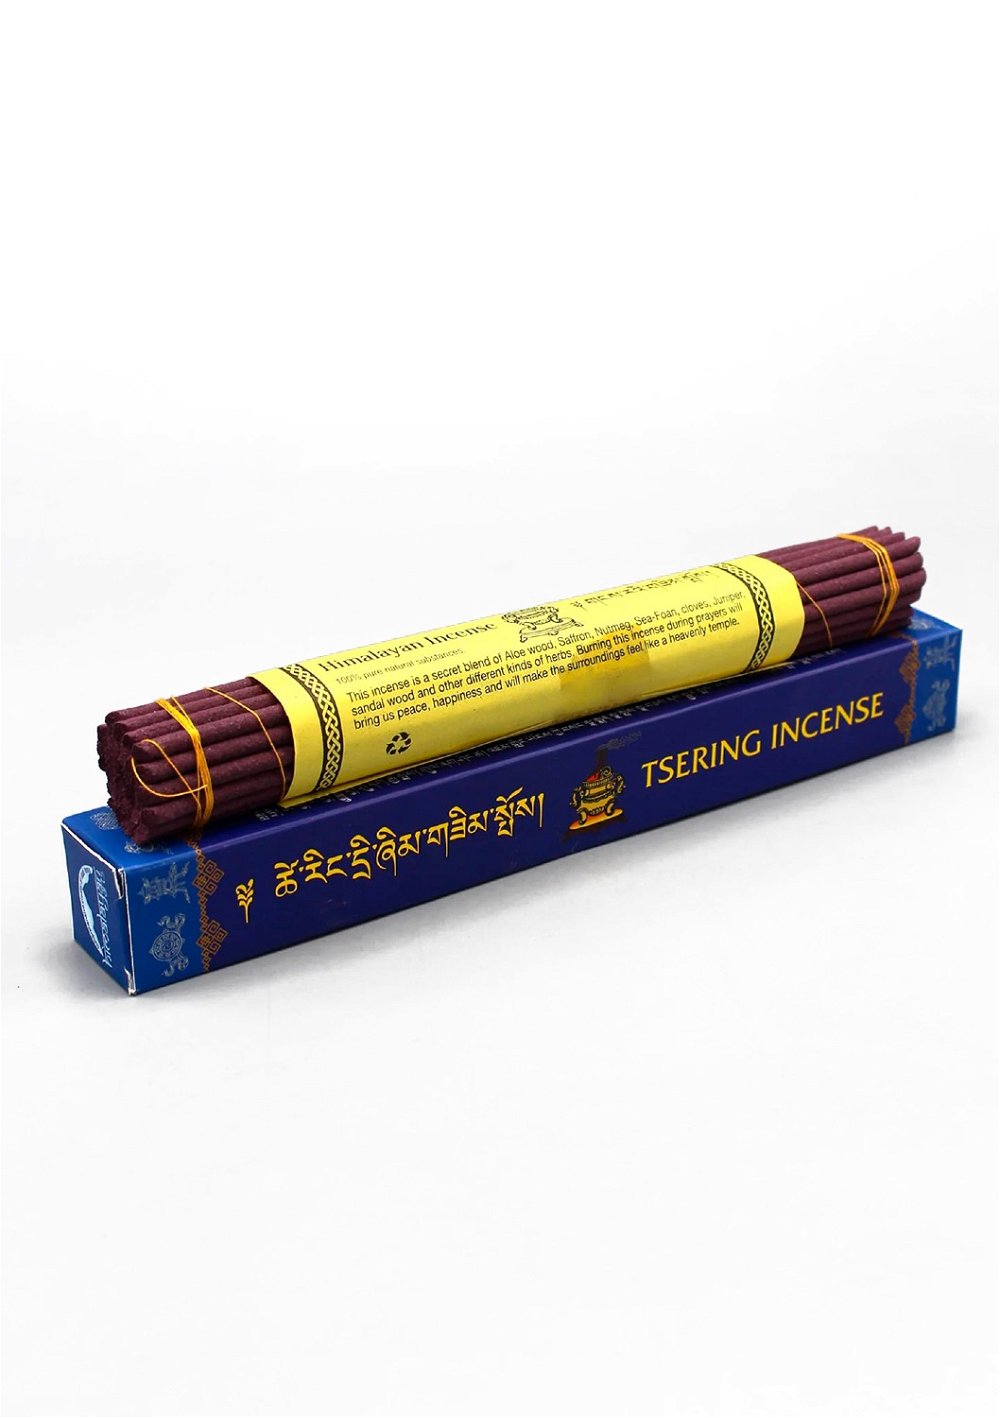 Благовоние Tsering Incense (Церингма), синяя упаковка, 30 палочек по 21,5 см, 30, Tsering, синяя упаковка